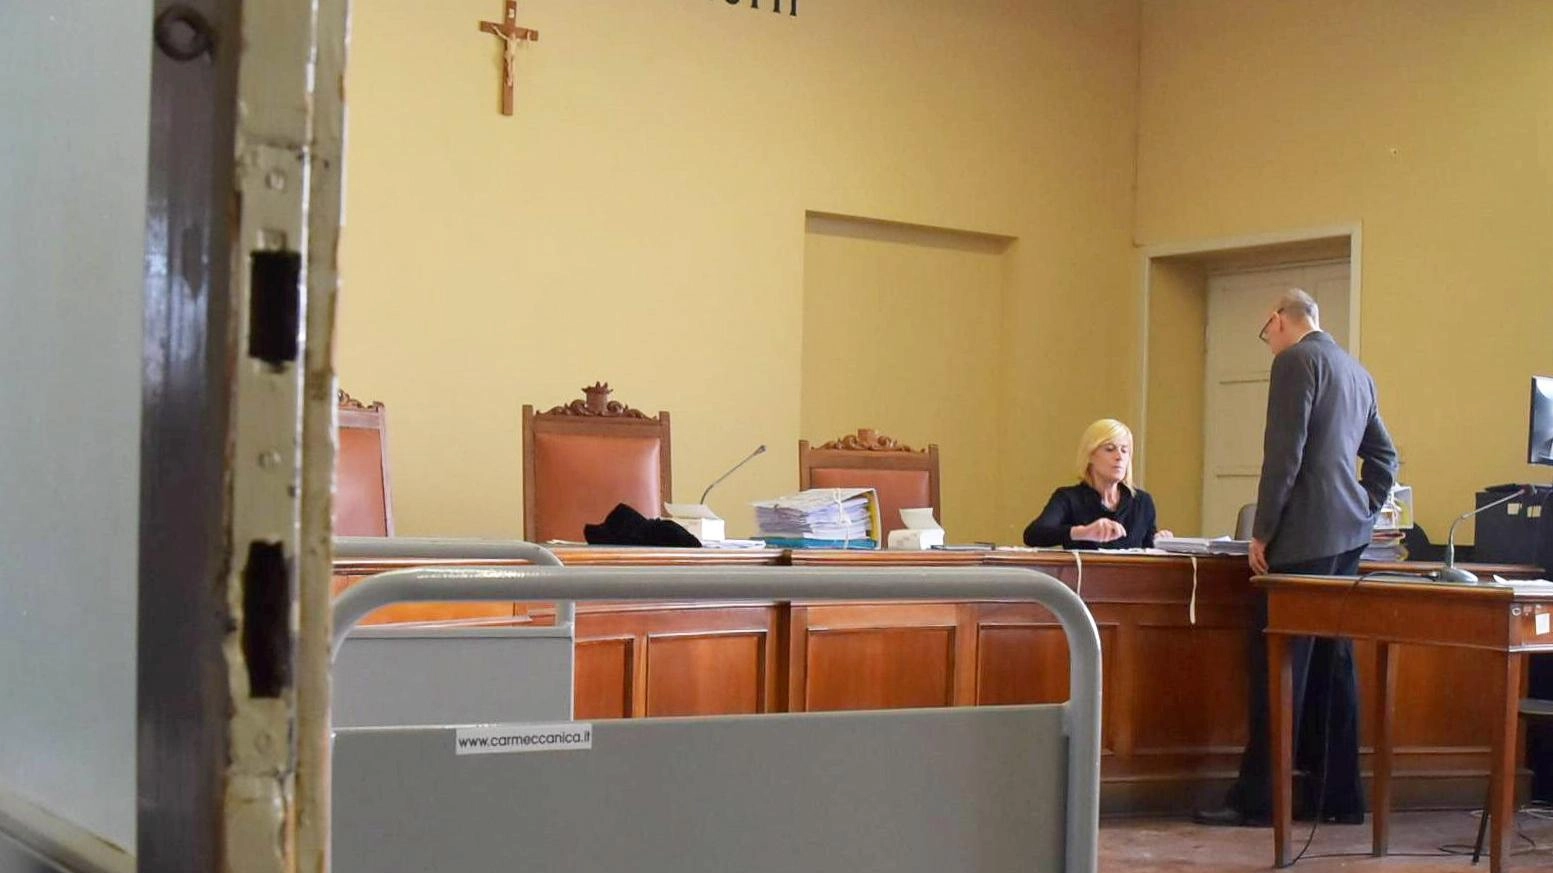 Trentacinquenne della provincia di Pavia assolto per particolare tenuità del fatto in caso di ricettazione di uno smartphone rubato. Procura chiedeva 8 mesi, ma giudice ha deciso diversamente.